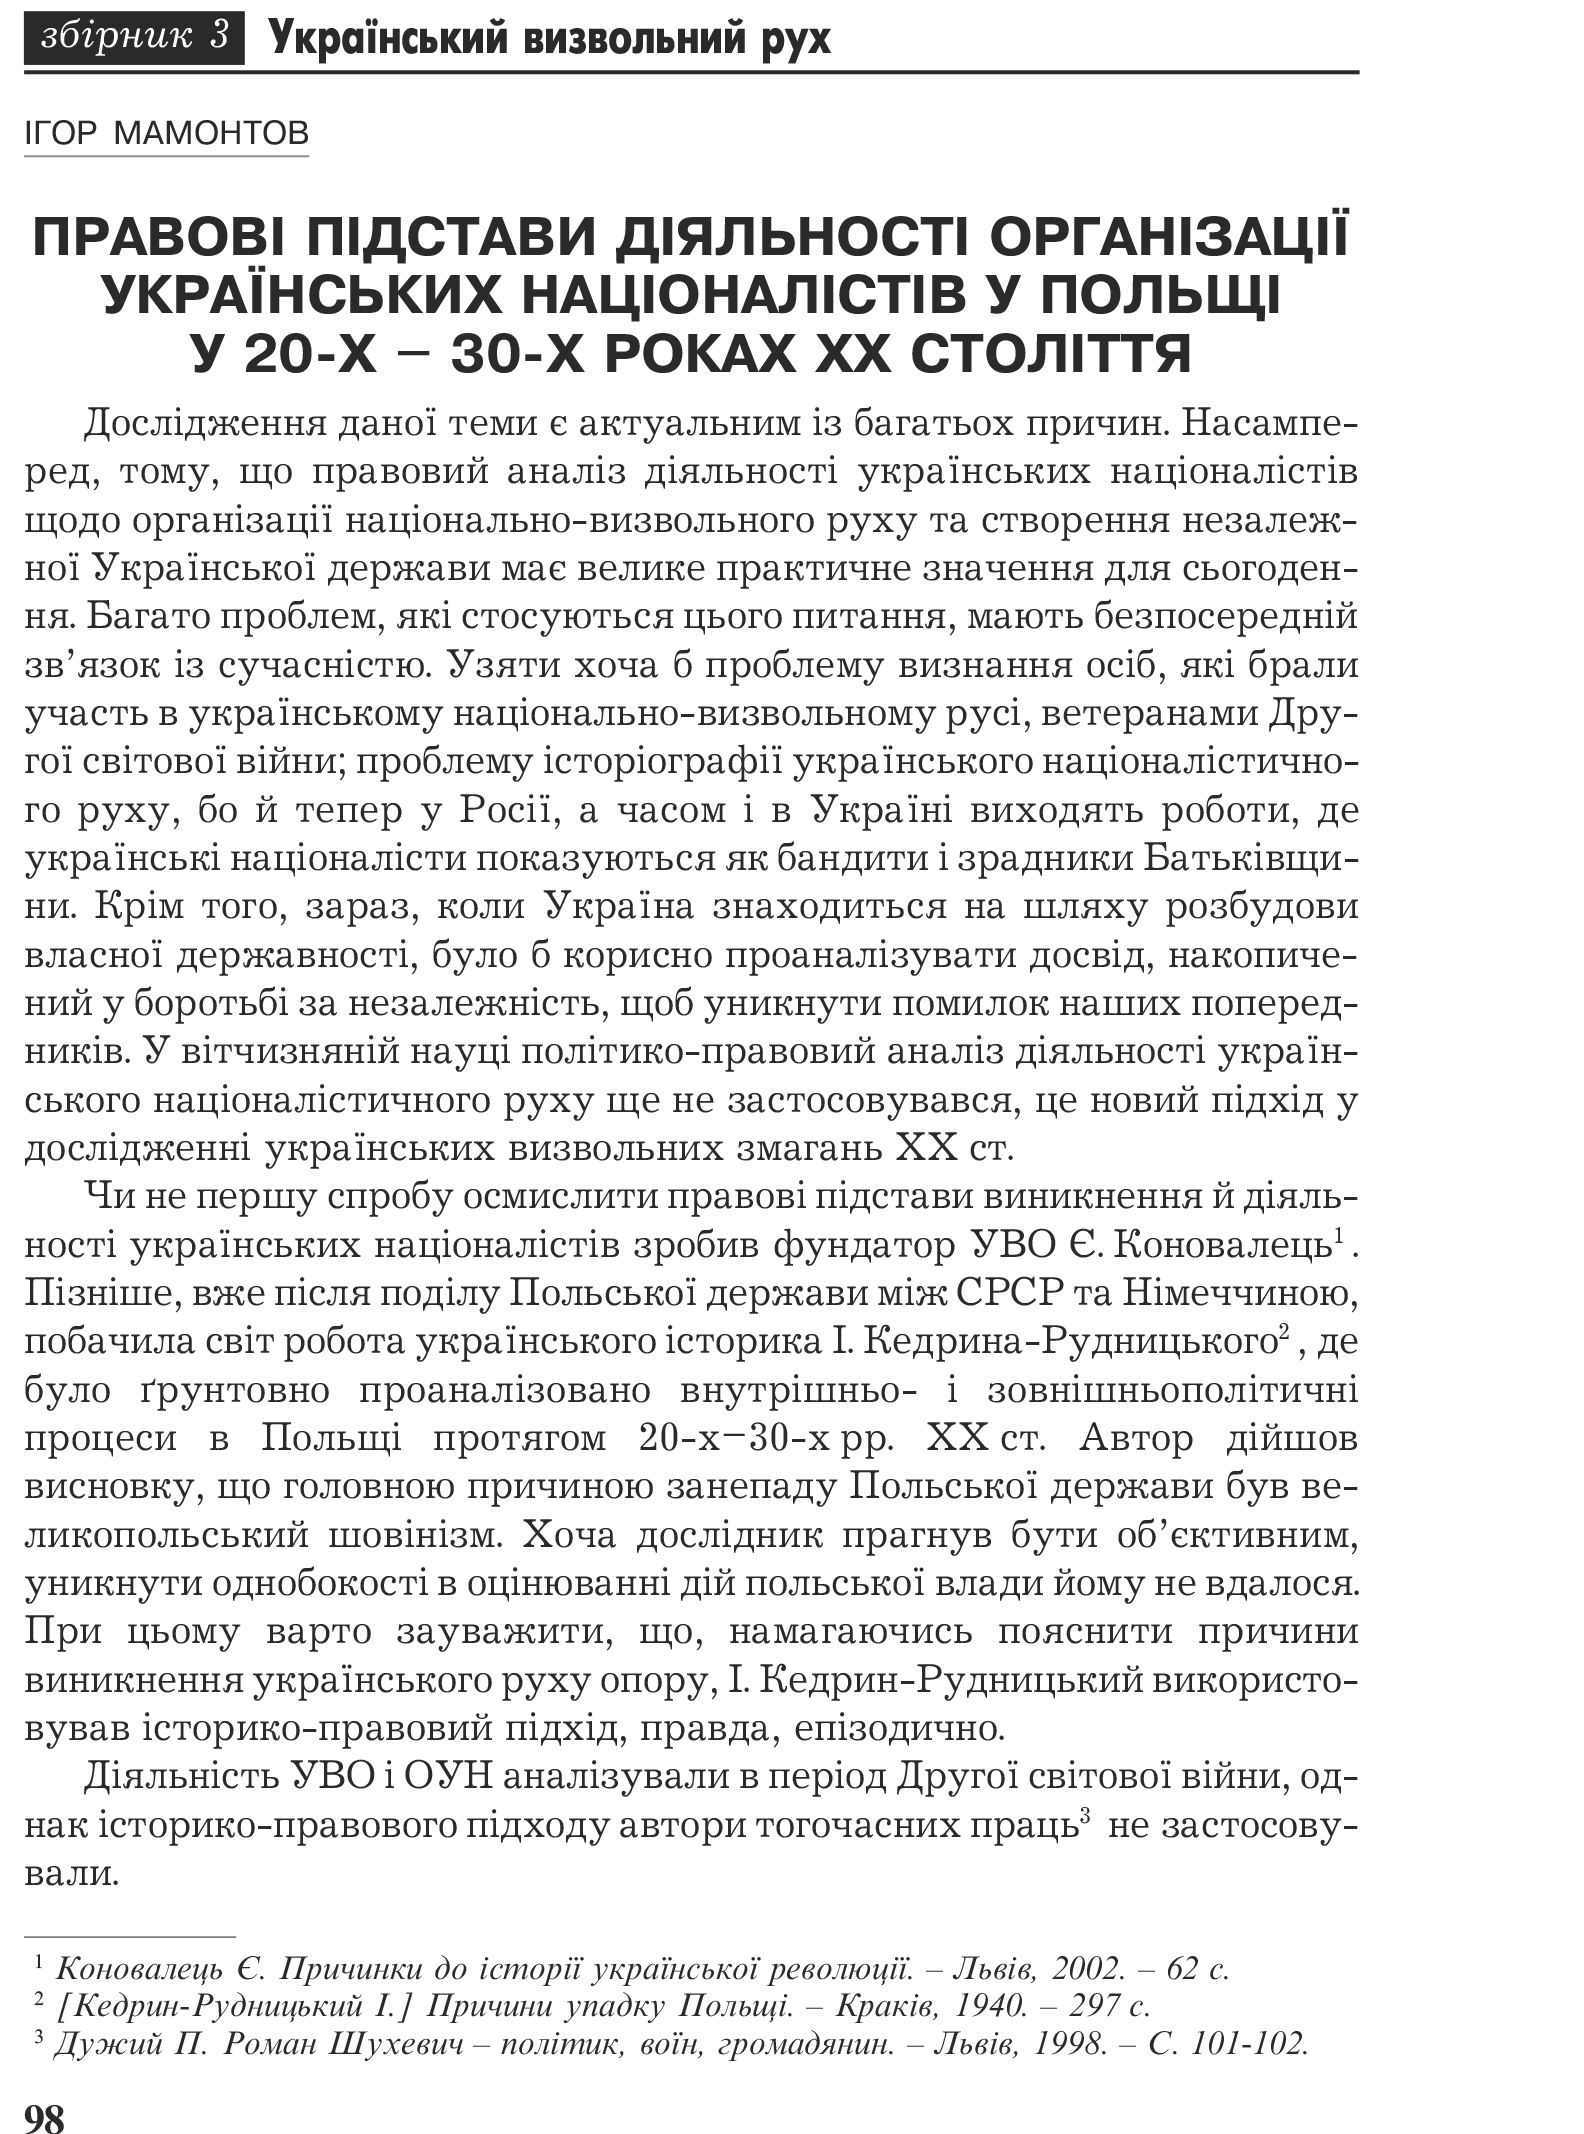 Український визвольний рух №3, ст. 98 - 101